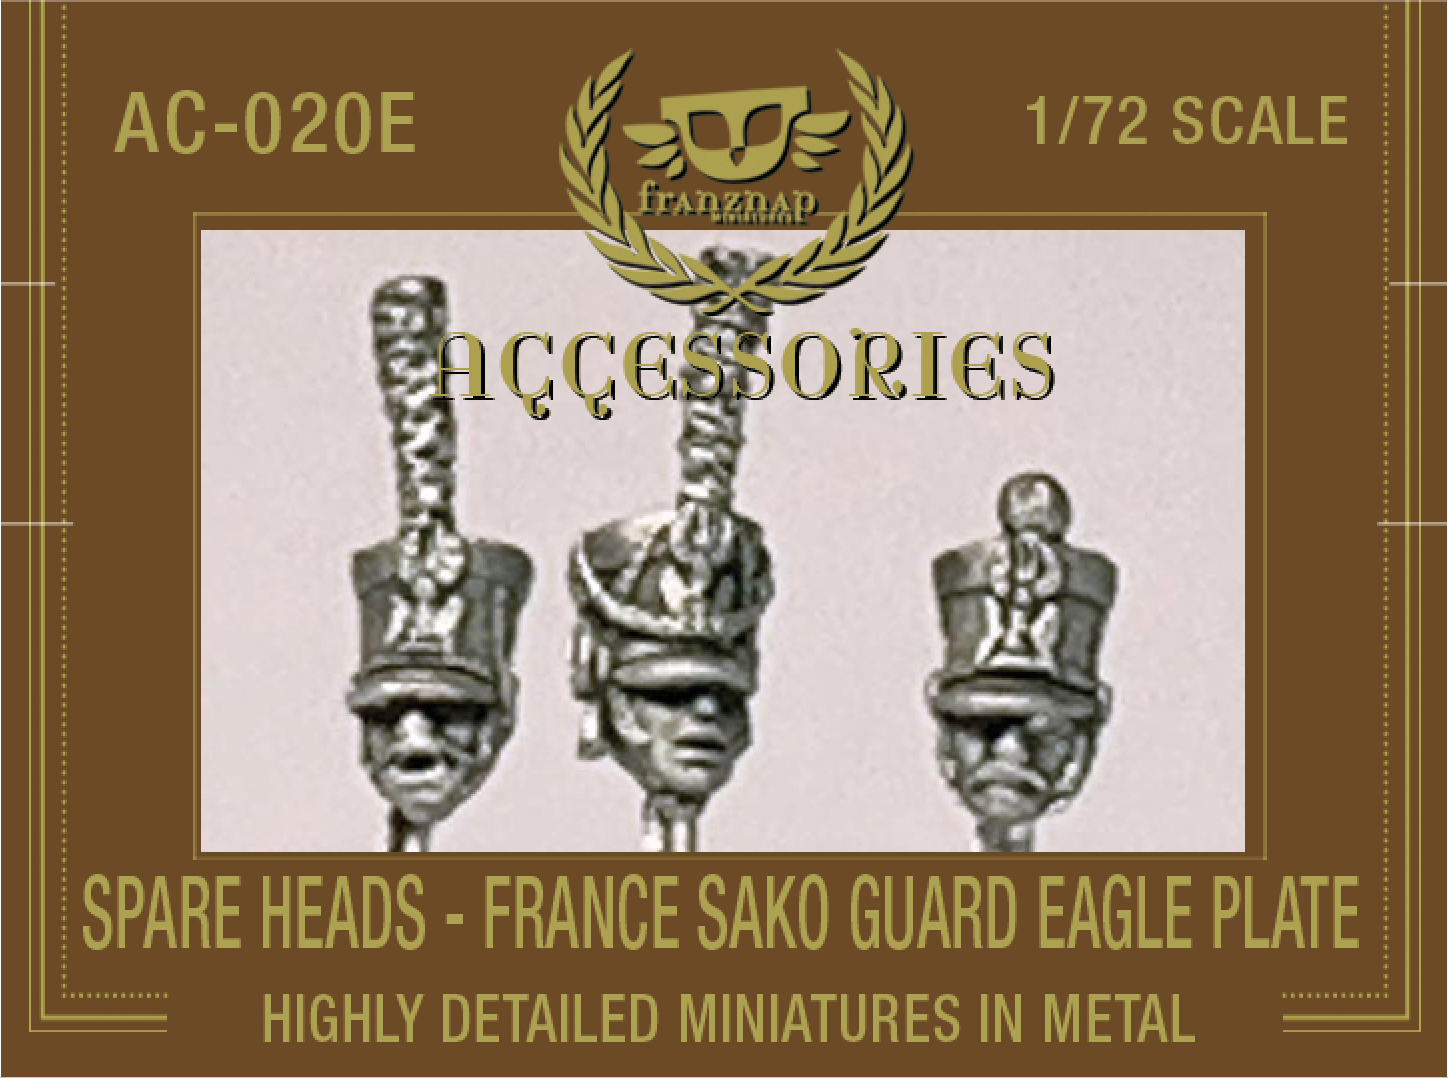 AC-020E SPARE HEADS France Sako Guard Eagle Plate